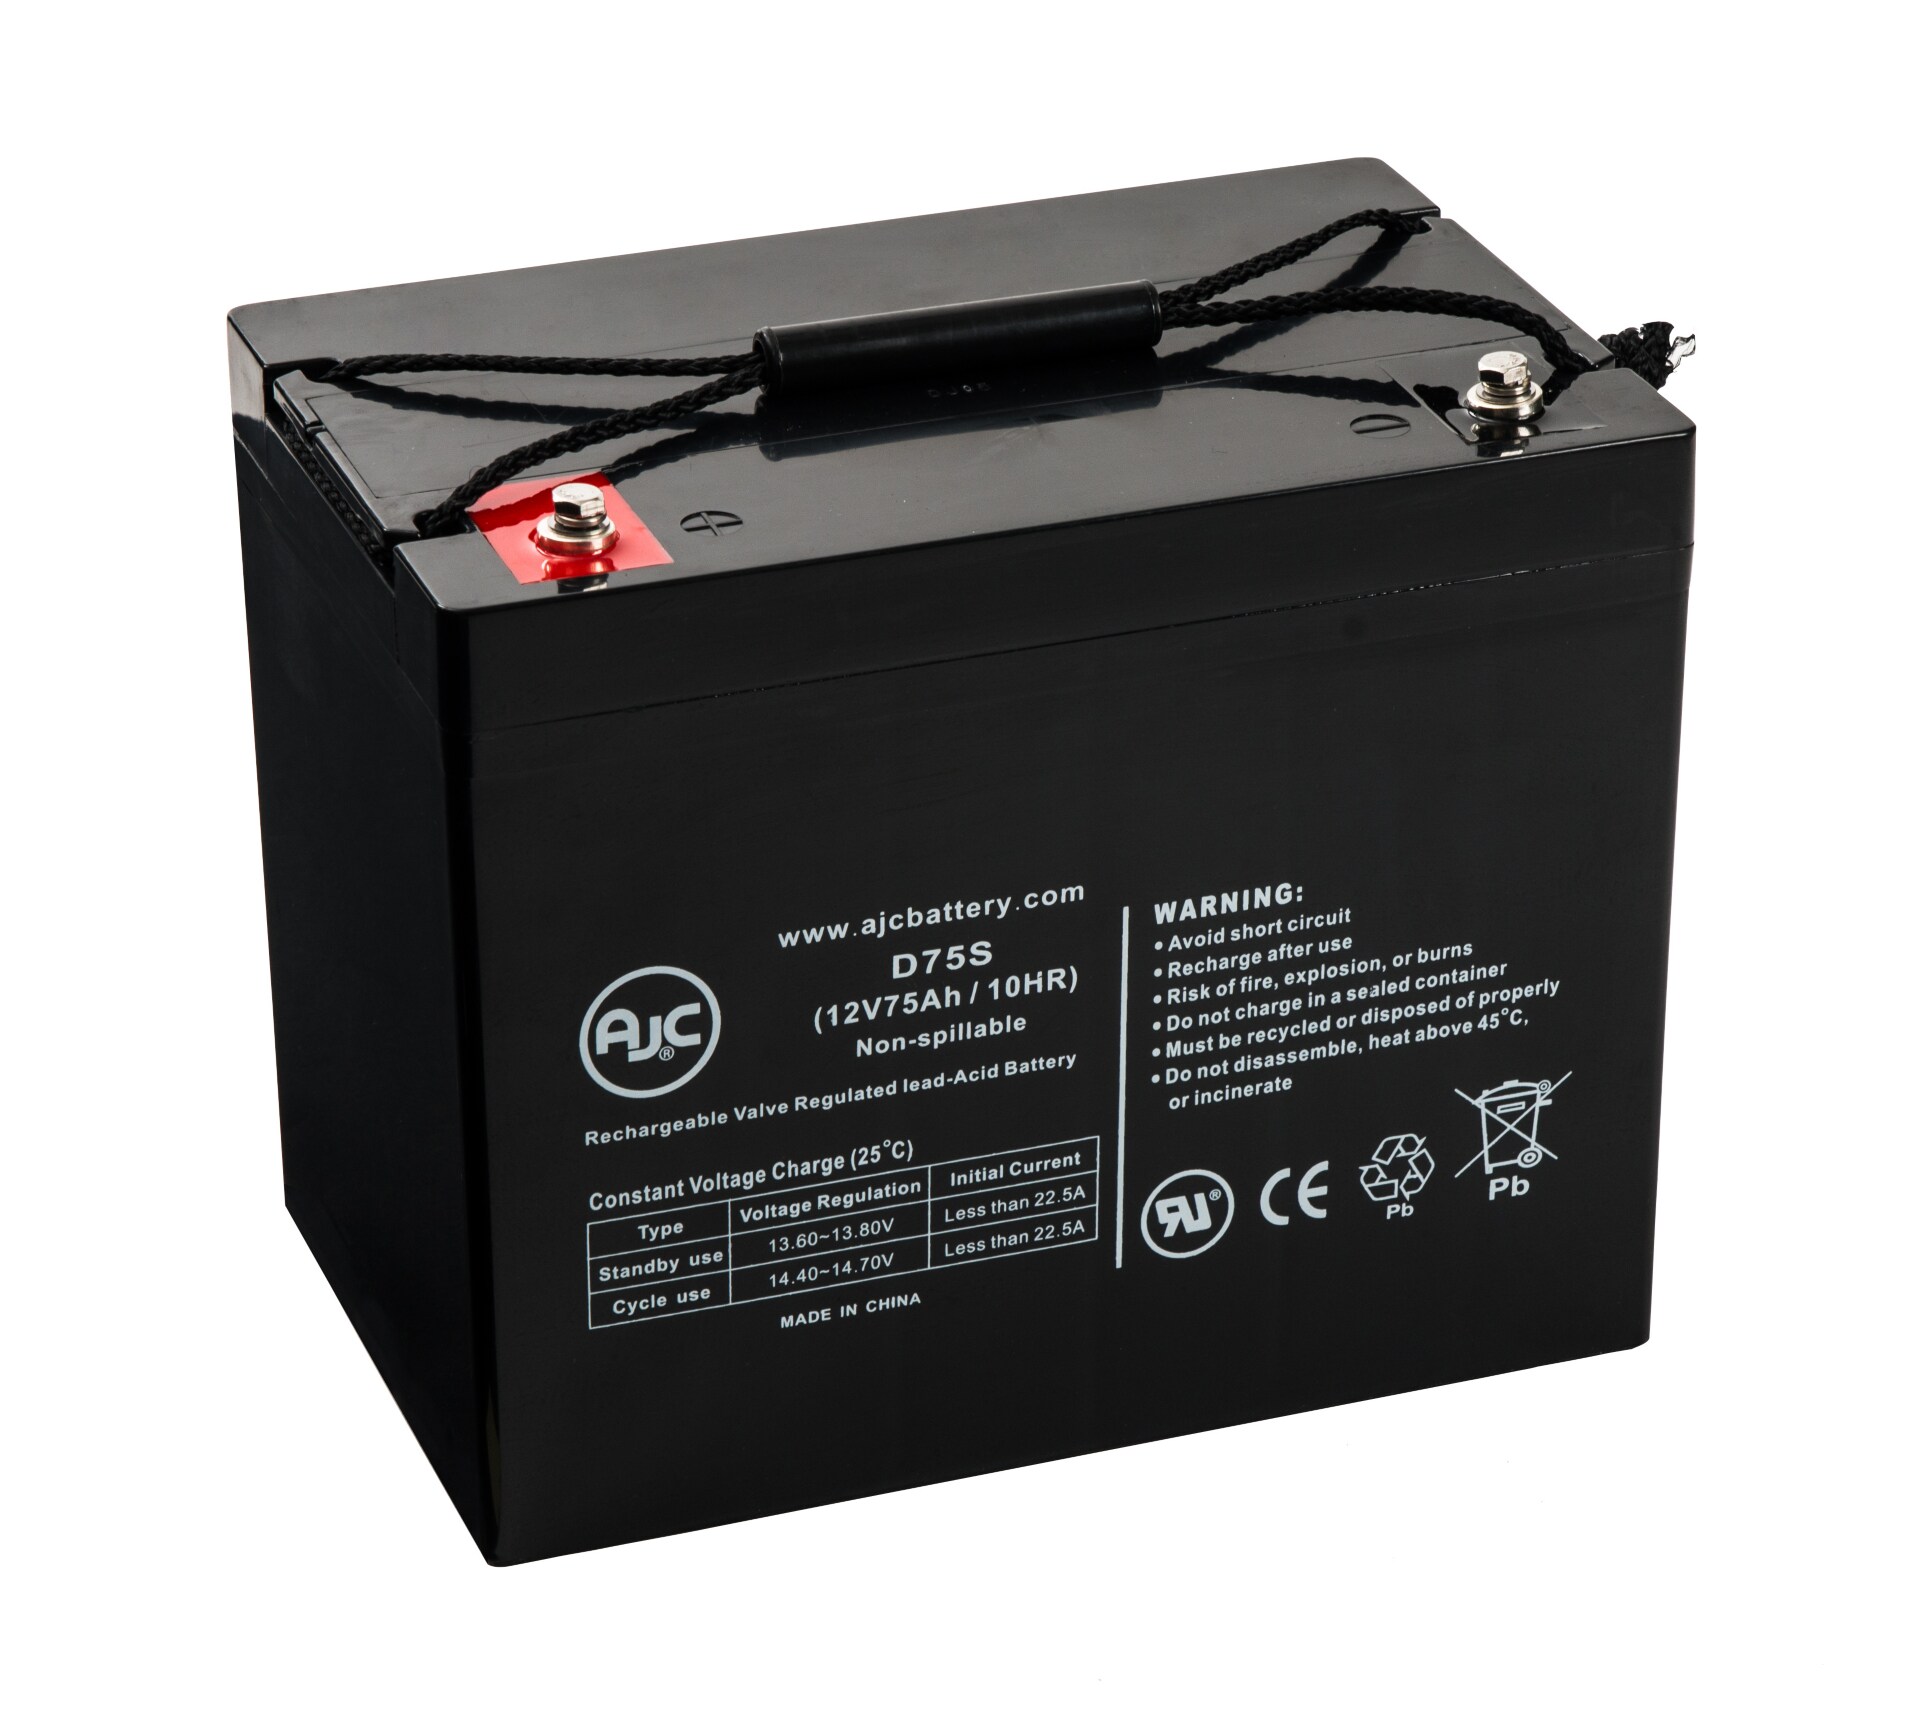 Eaton Powerware 12V 75mAh UPS Battery